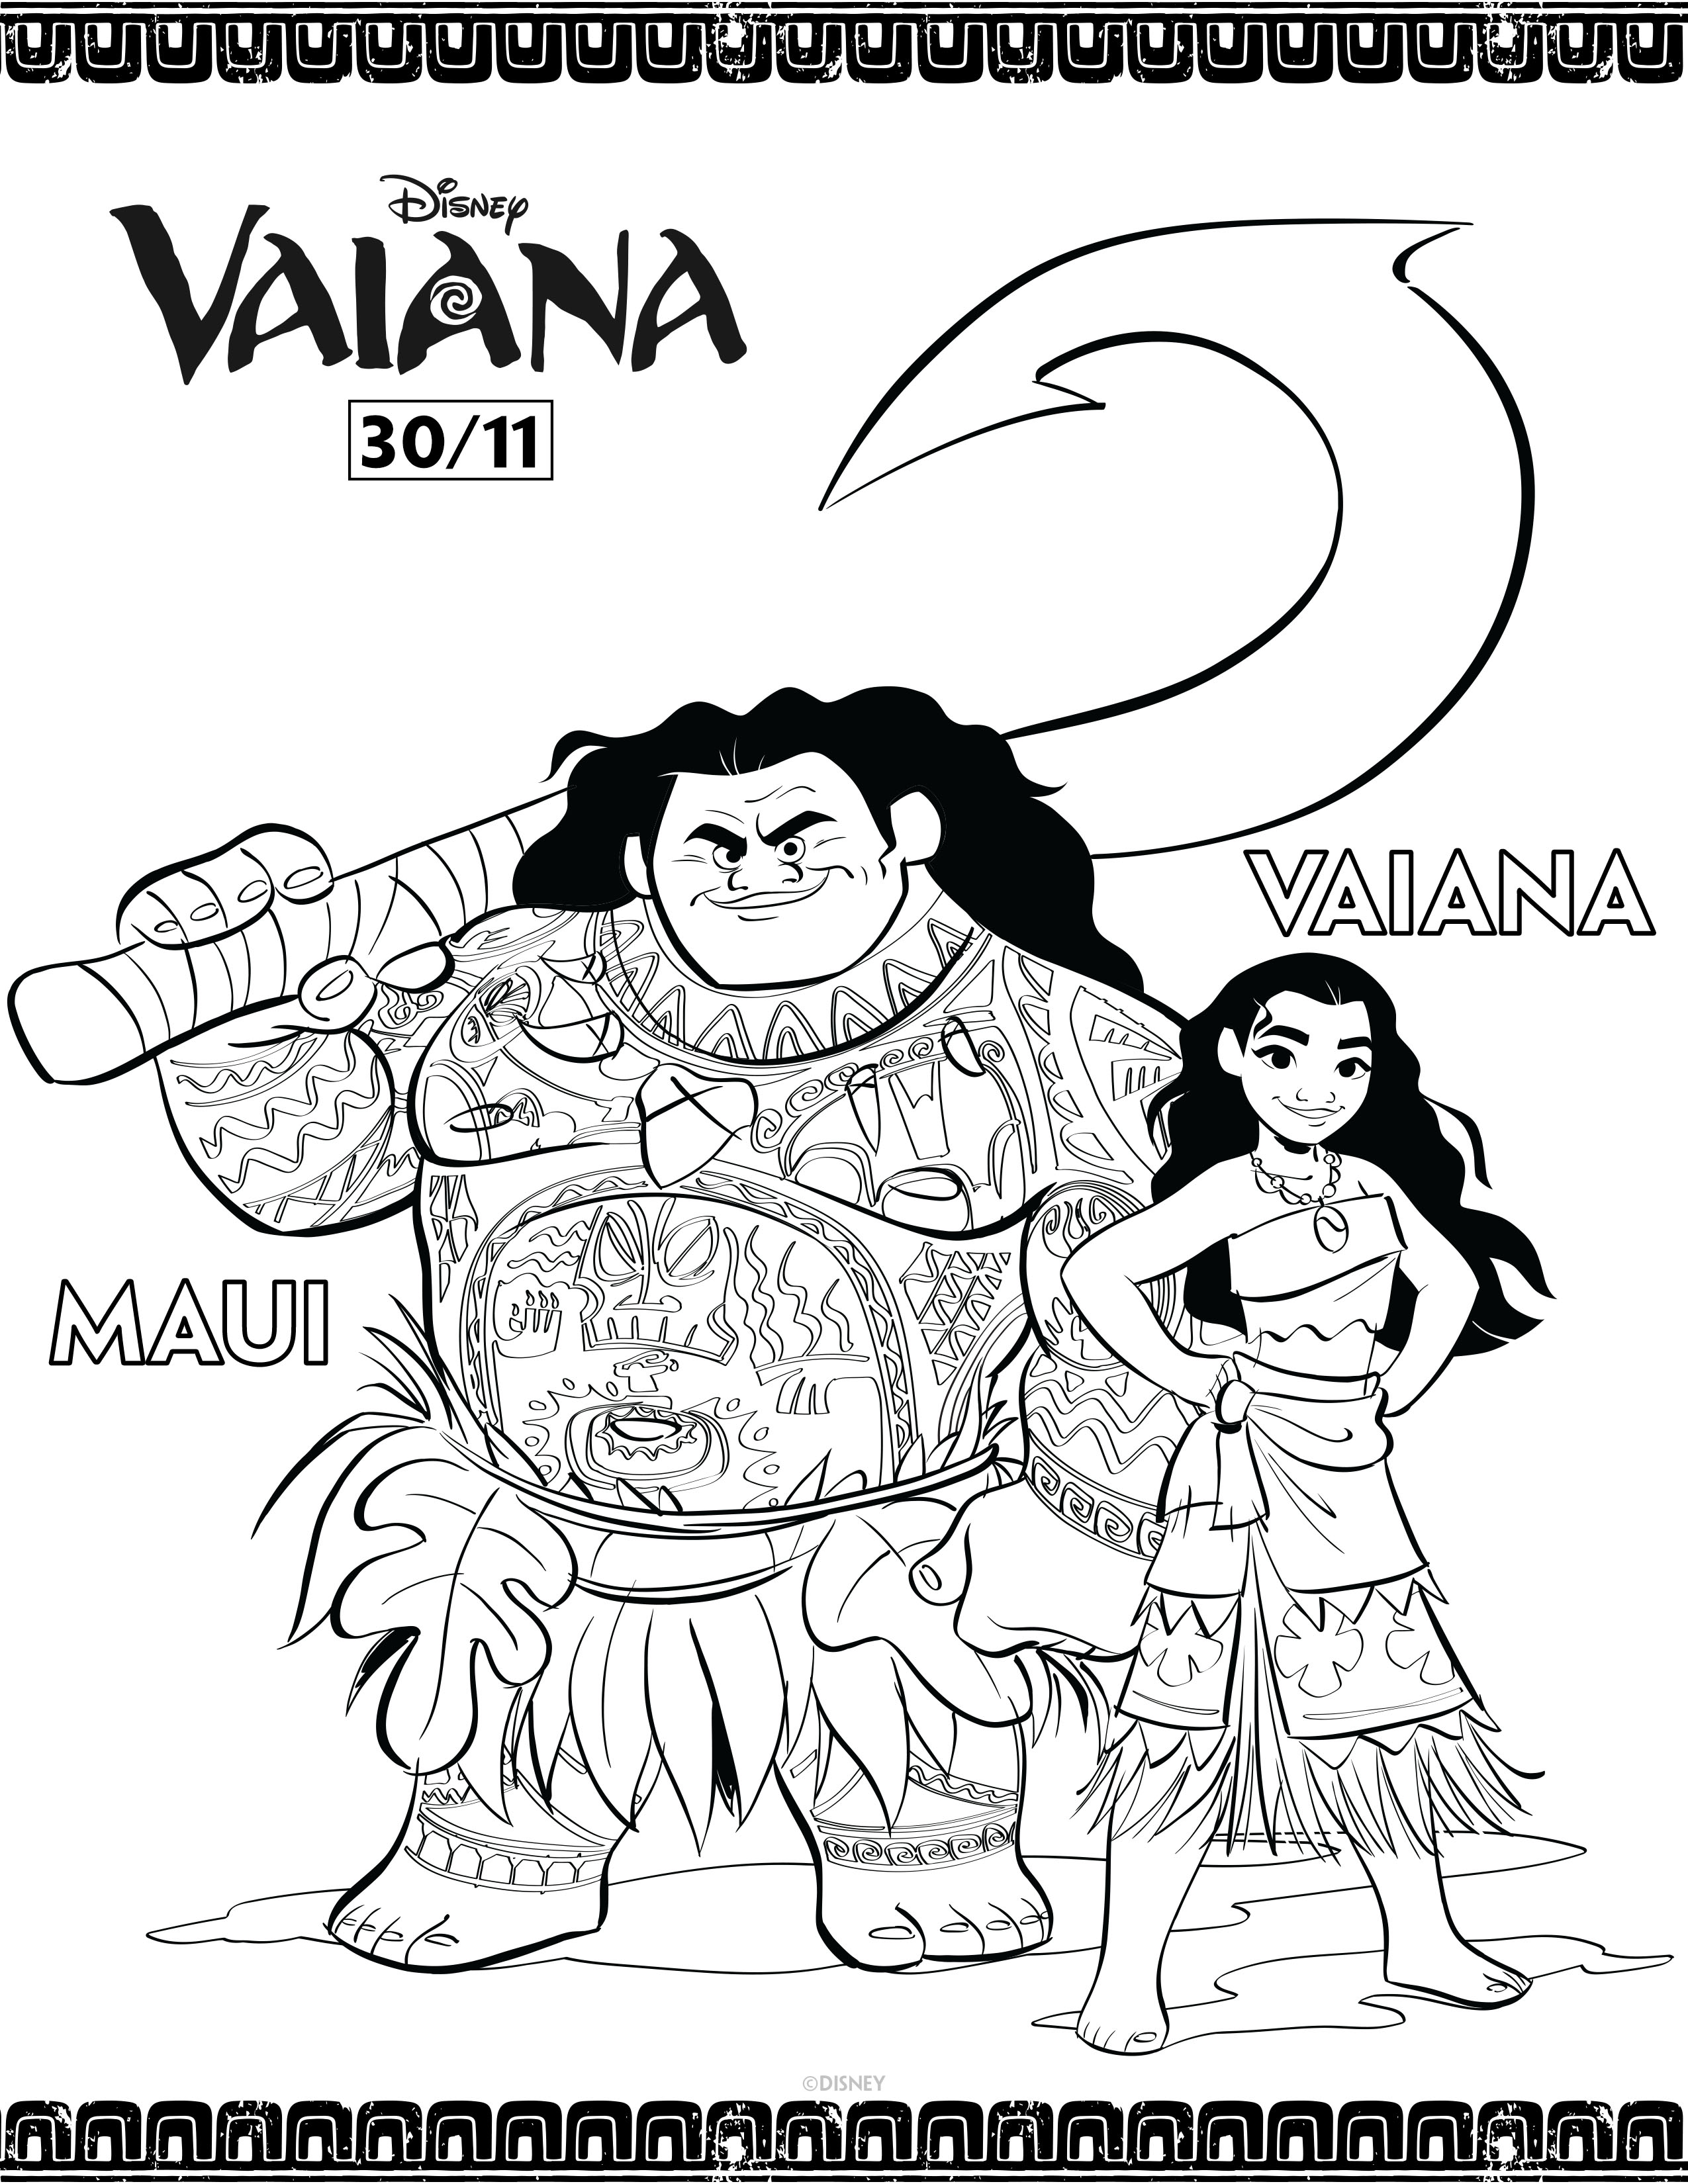 Un coloriage magnifique de Maui et Vaiana